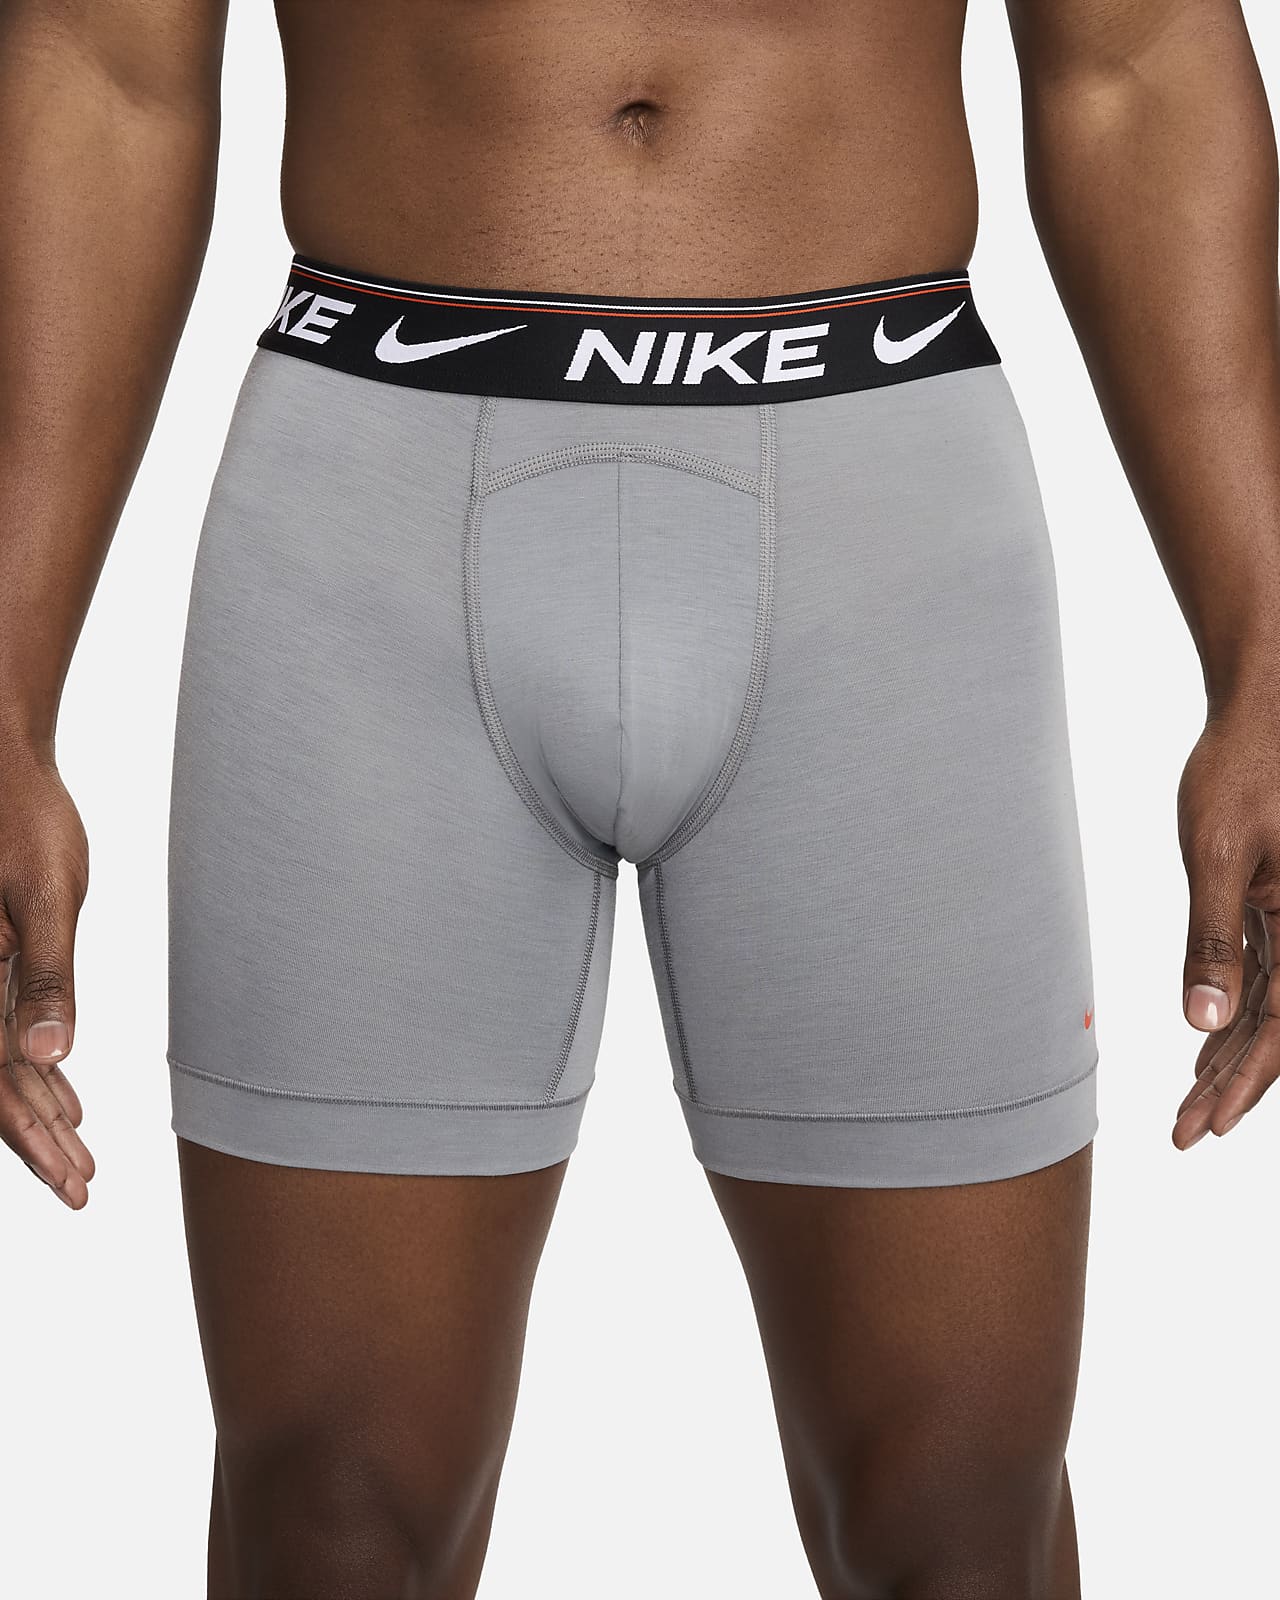 Ropa interior para hombre (paquete de 3) Nike Dri-FIT Ultra Comfort